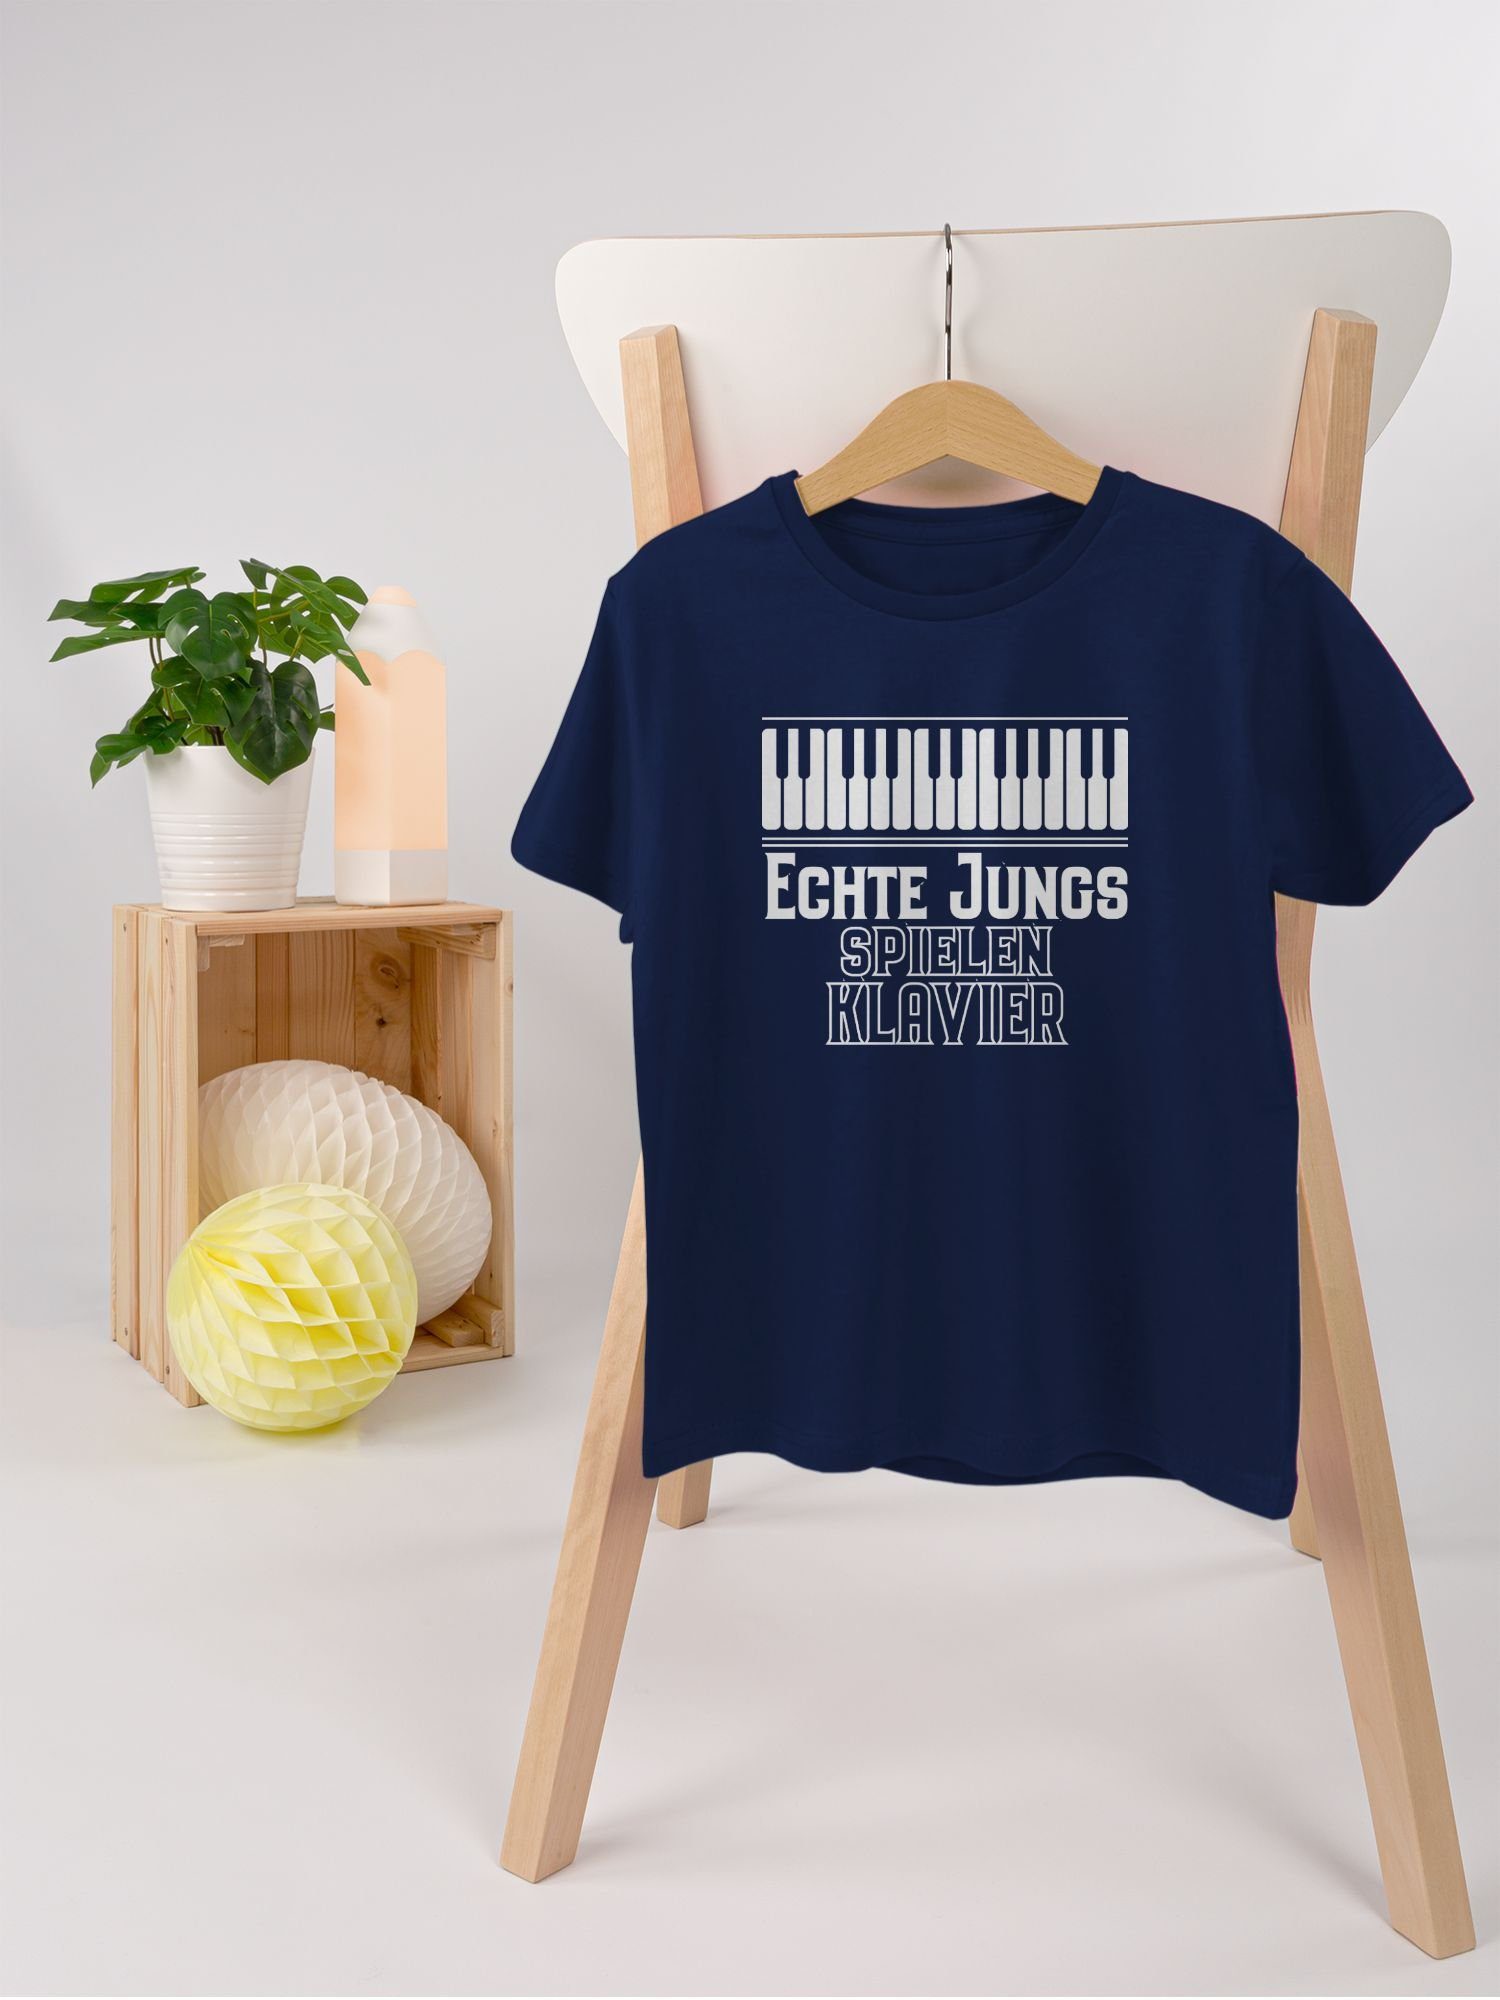 Statement spielen Echte 1 Jungs T-Shirt Dunkelblau Klavier Sprüche Kinder Shirtracer